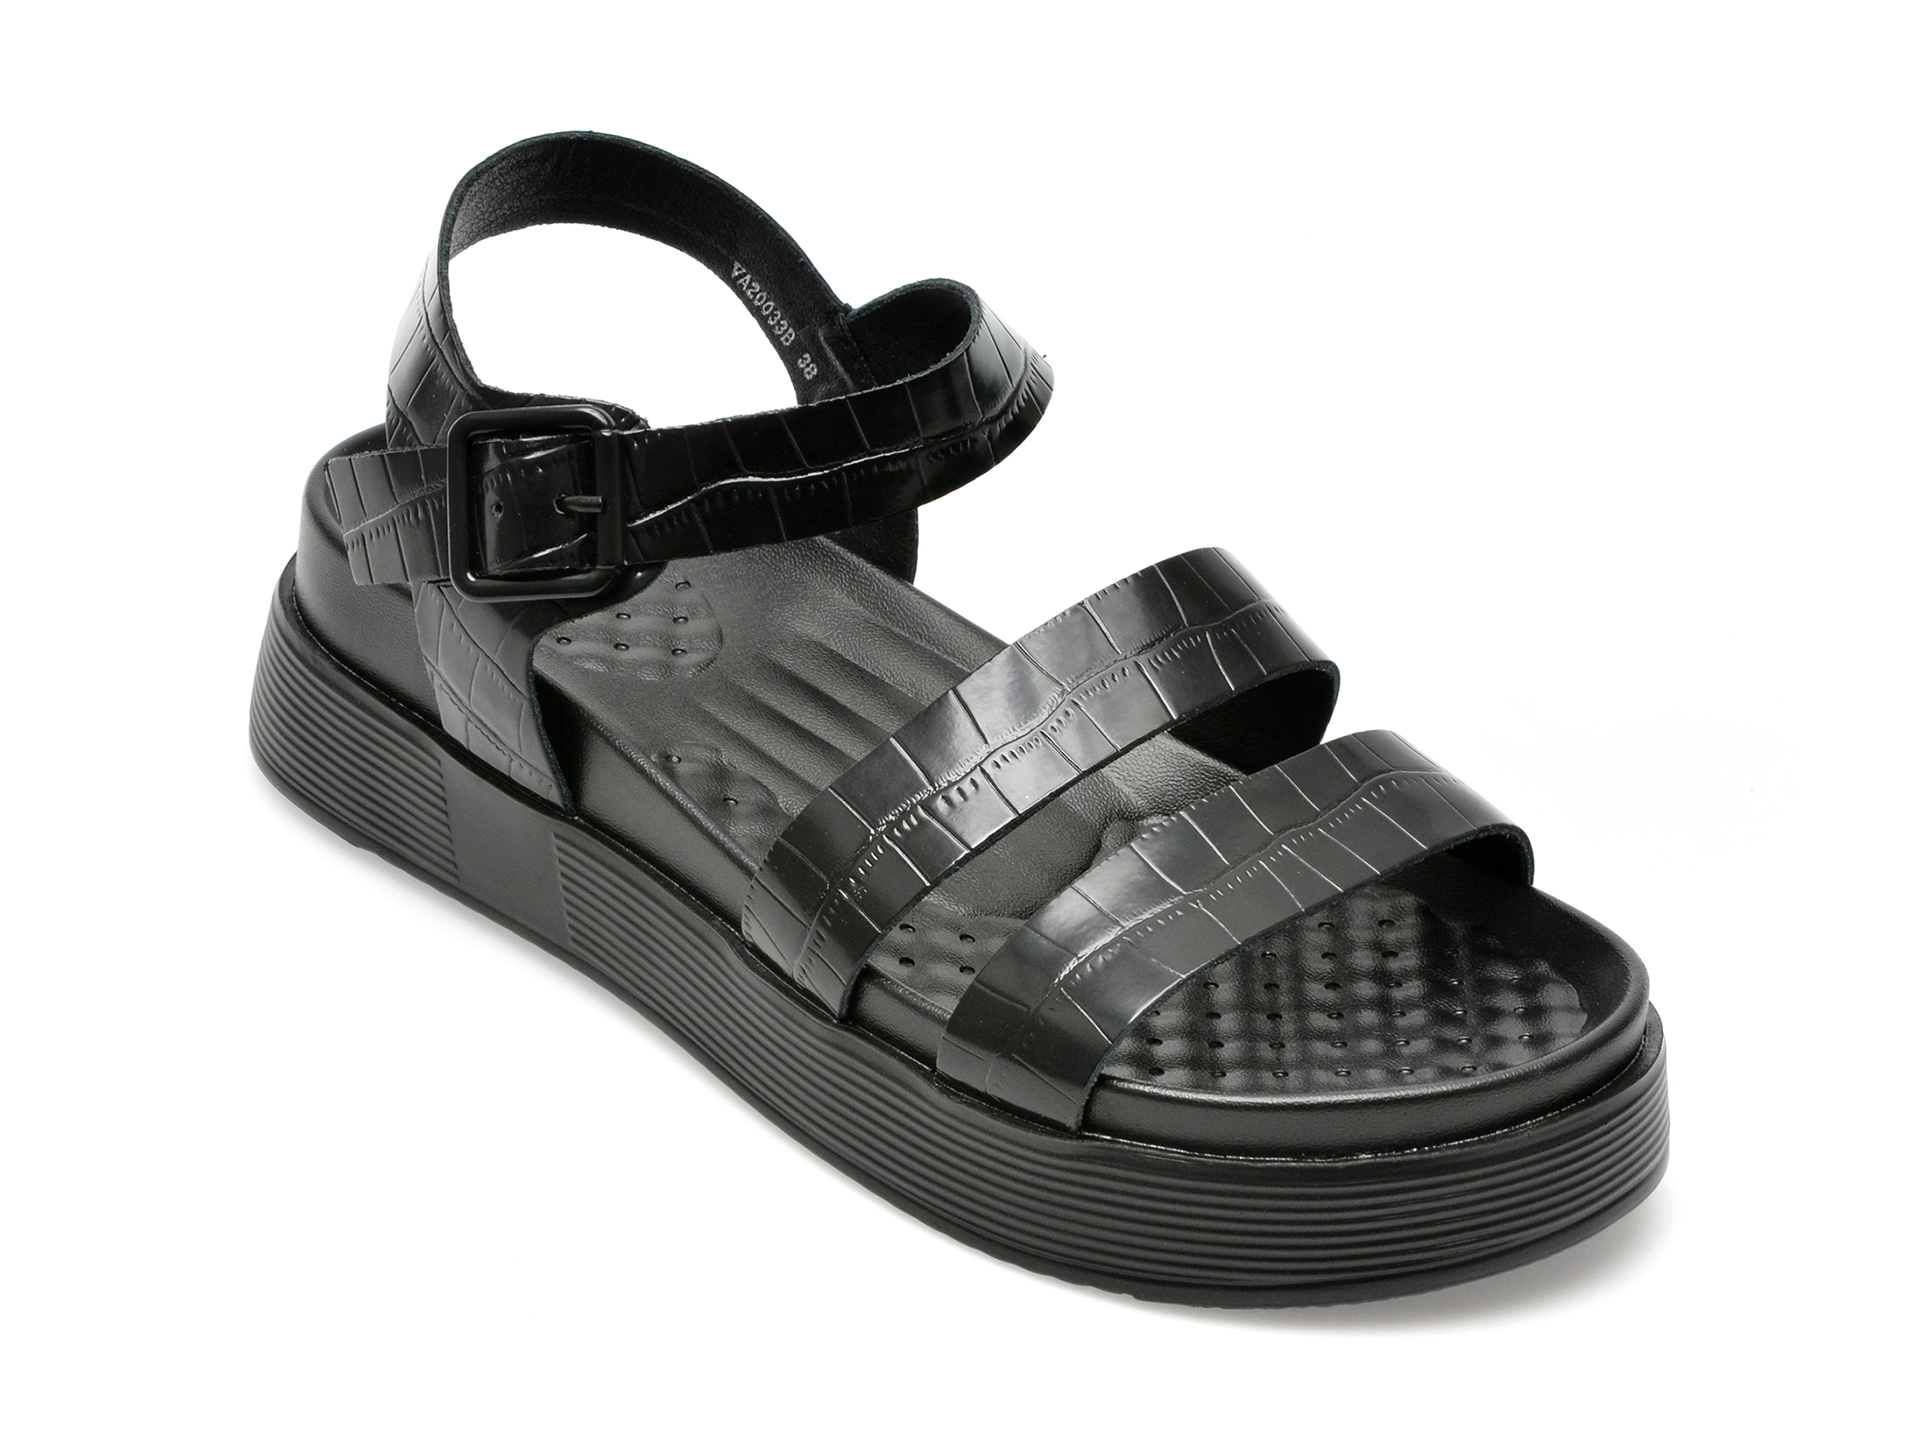 Sandale IMAGE negre, VA20033, din piele croco